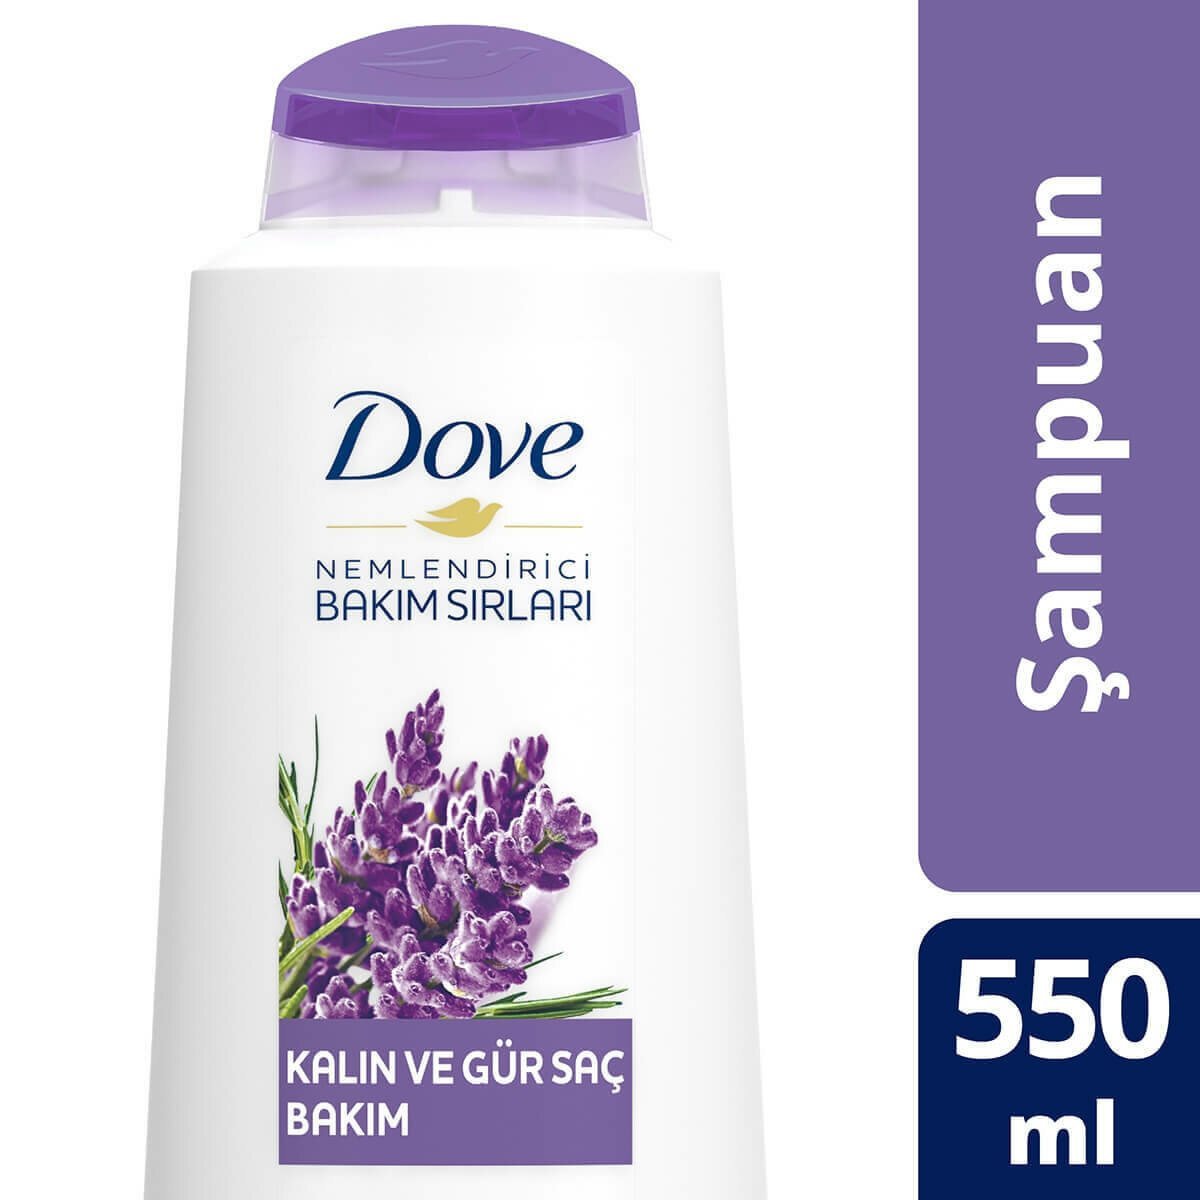 Dove Lavanta Yağı ve Biberiye Özü ile Kalın ve Gür Saç Bakım Şampuanı 550 ml